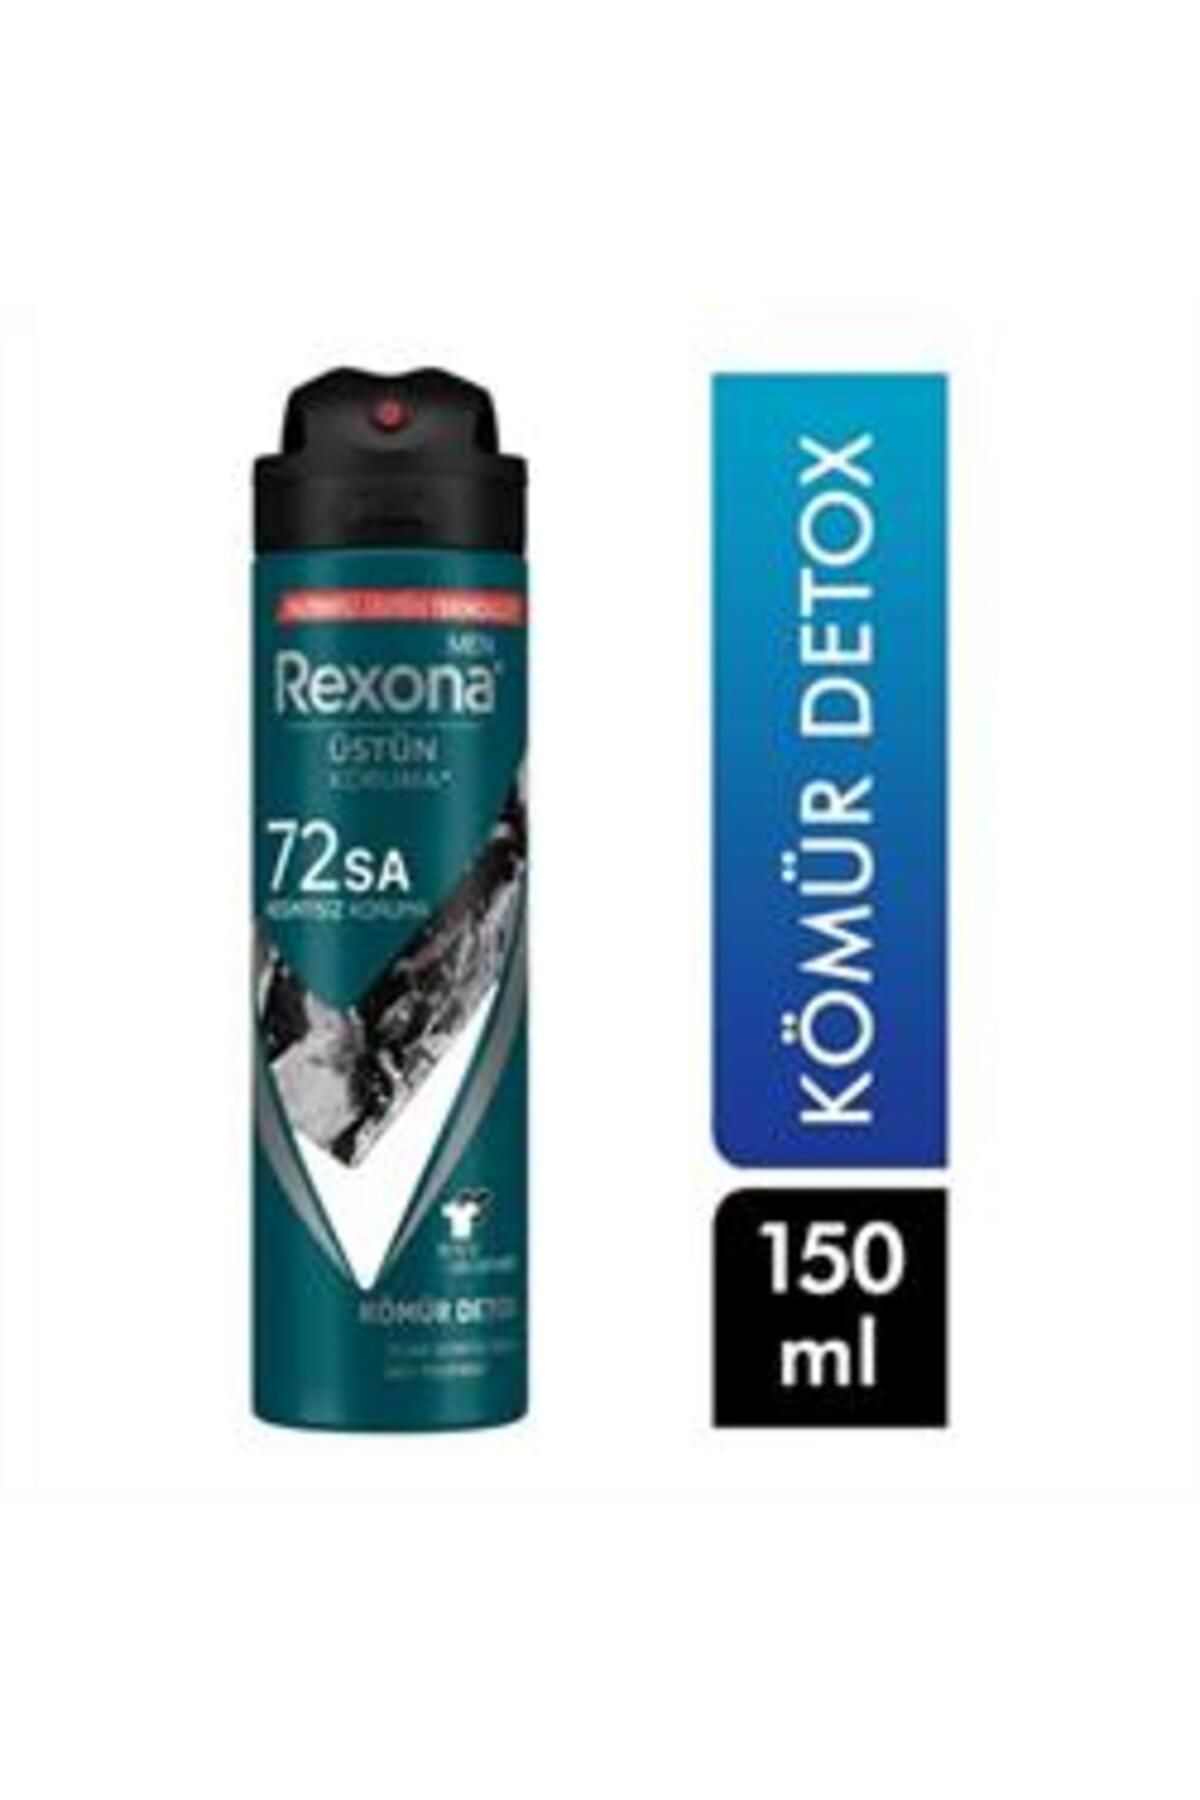 Rexona ( KİL MASKESİ HEDİYE ) Rexona Men Sprey Deodorant Kömür Detox 150ml ( 1 ADET )